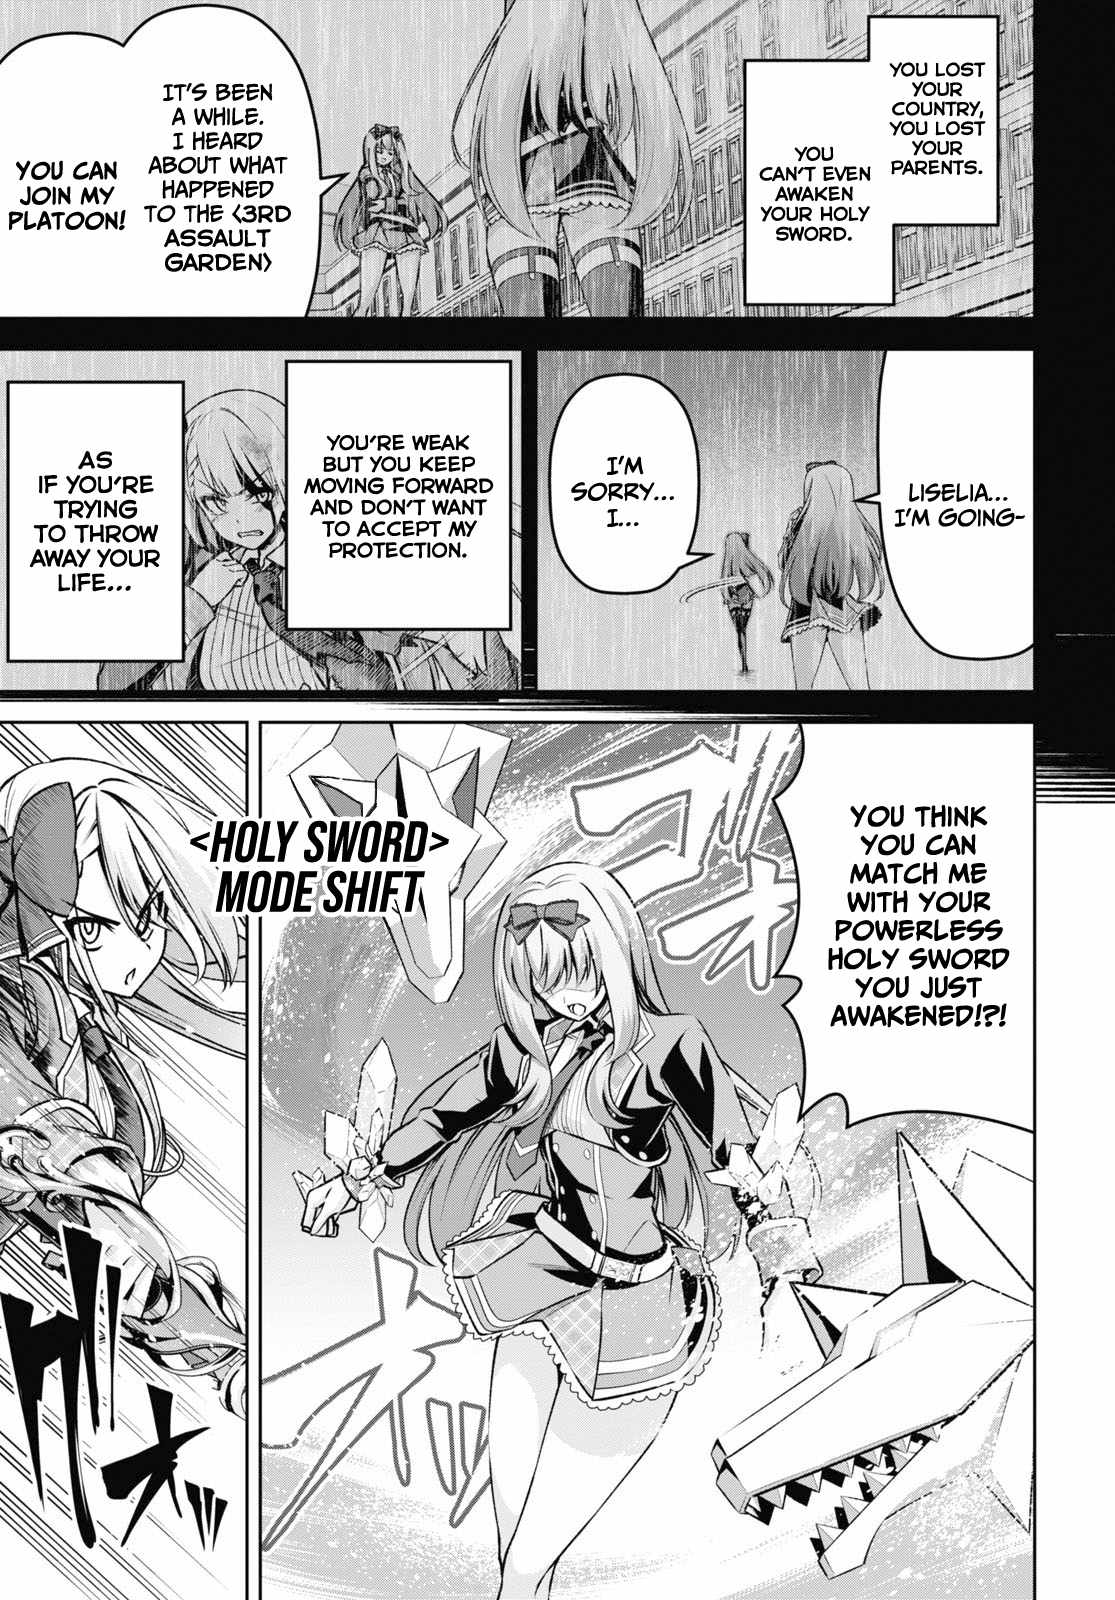 Demon's Sword Master Of Excalibur School - 22 page 8-67556b0d